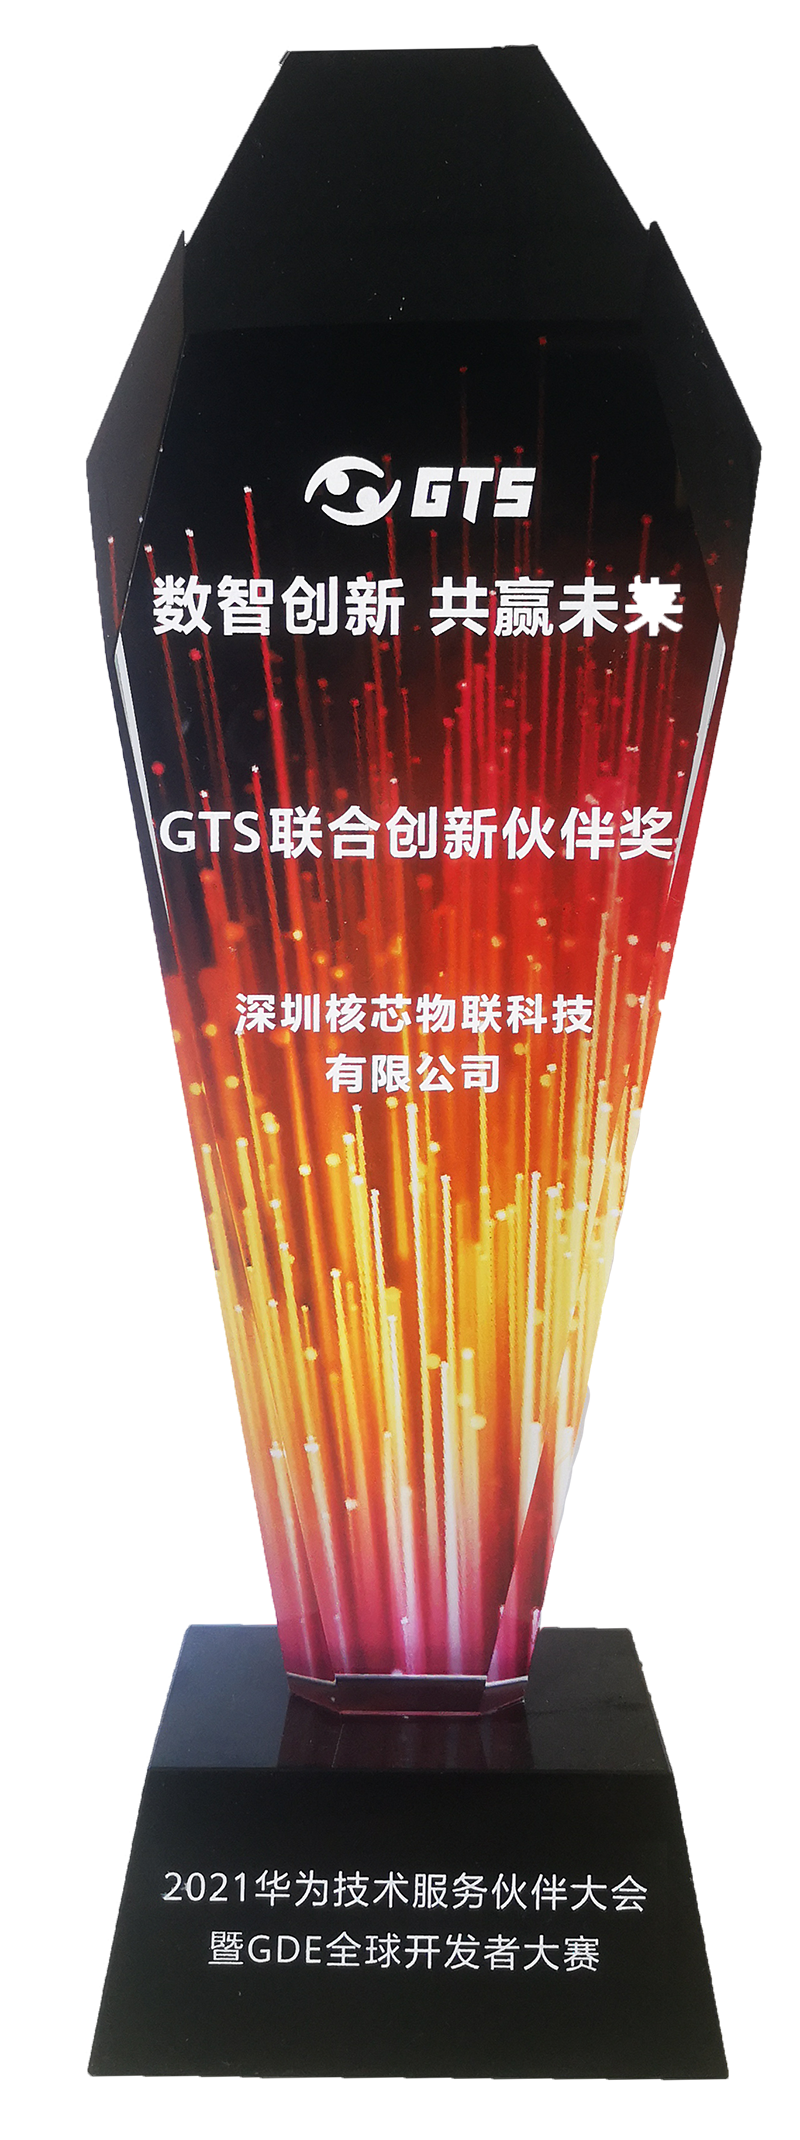 核芯物联荣获华为GTS联合创新伙伴奖